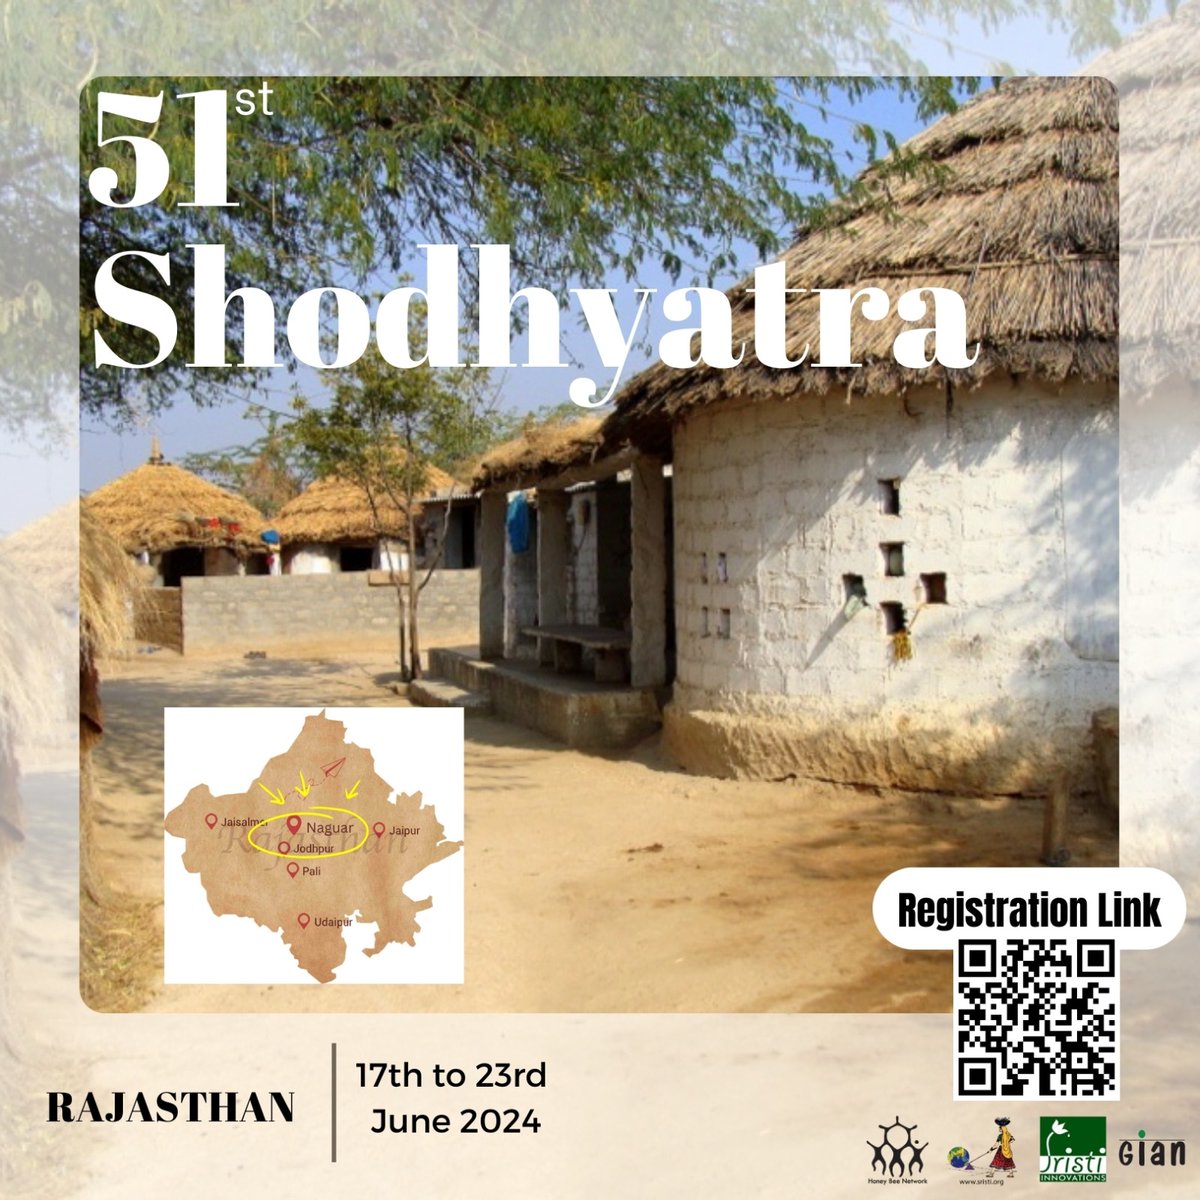 हमारी 51 वी शोधायात्रा राजस्था के नागौर जिले में आयोजित हो रही है। इस यात्रा में जुड़ने के लिए आमंत्रित करता हु। चलो मिलकर प्रयाेगधर्मी किसान और ग्रामीण आविष्कार से सीखे साथ साथ चार गुरु से सीखने की यात्रा। *51st Shodhyatra Registration Link* forms.gle/jLfmQC5H4iWqRJ…